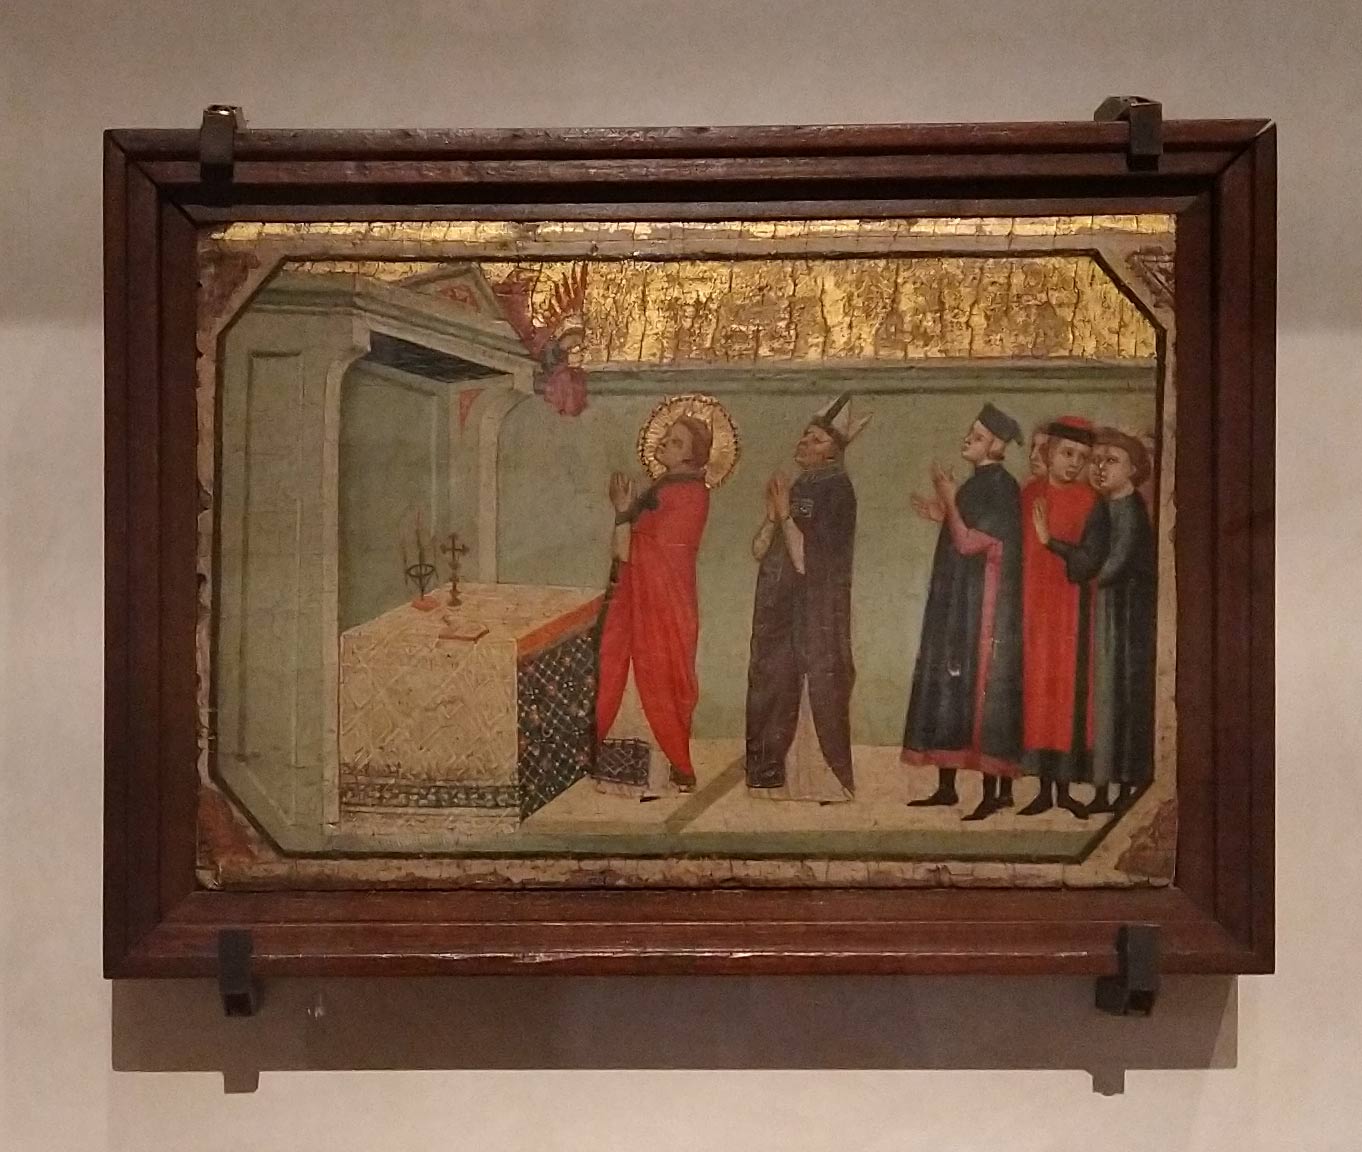 Pacino di Bonaguida, Miracolo della messa di san Procolo (1325-1330 circa; tavola, 21,1 x 31 cm; Rivoli, Castello di Rivoli, Collezione Cerruti)
